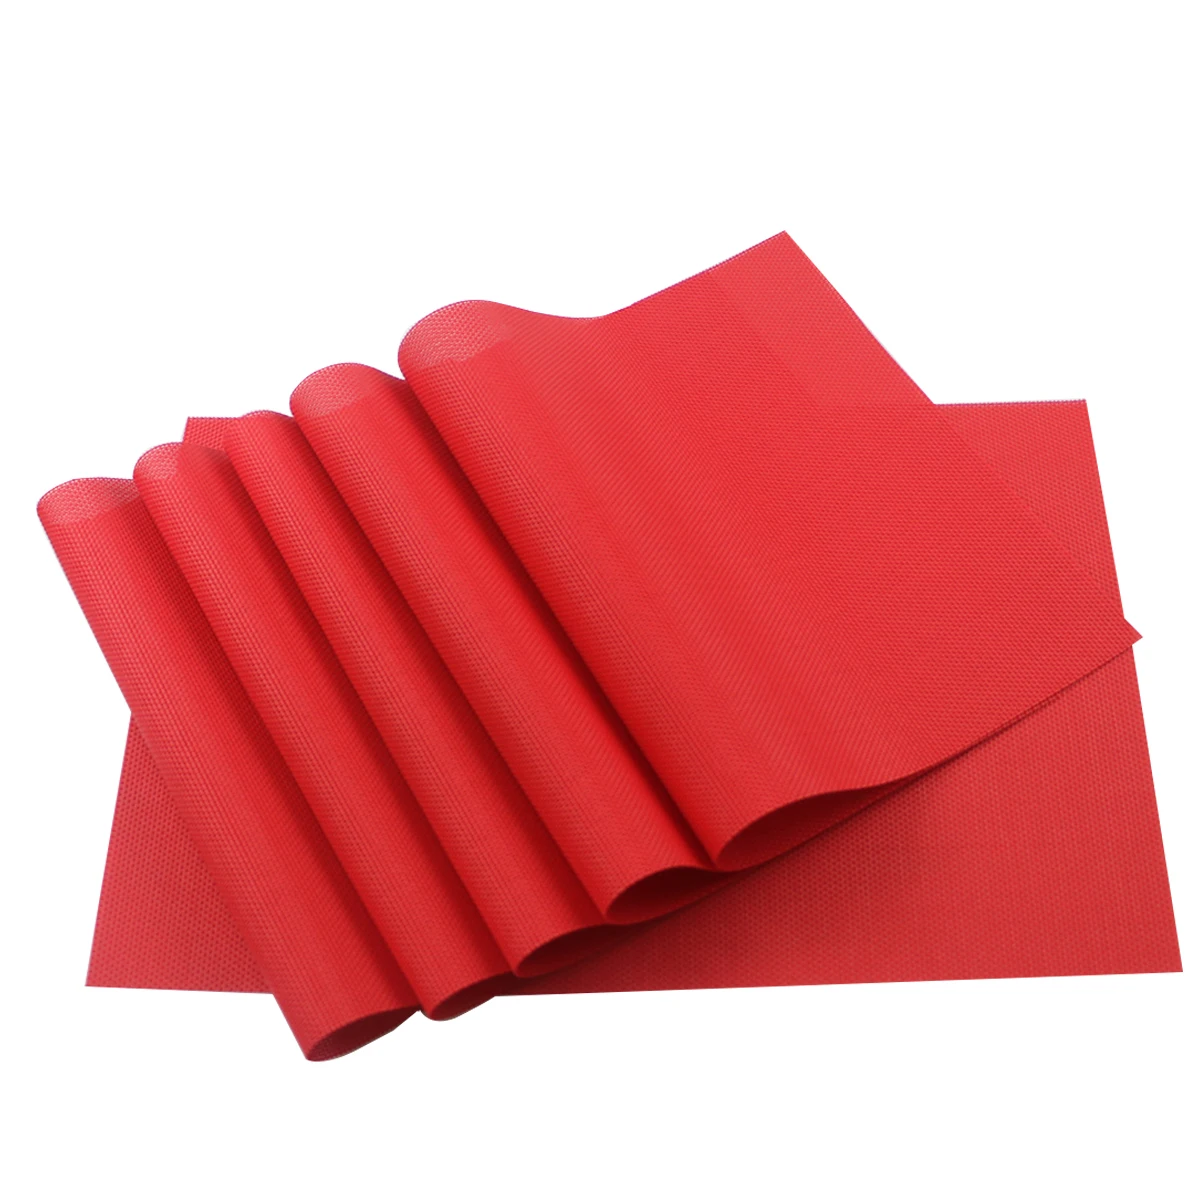 JANKNG 6 шт. ПВХ кухонные столовые салфетки для настольного коврика водостойкий коврик для стола индивидуальные коврики для чашек - Цвет: Solid red